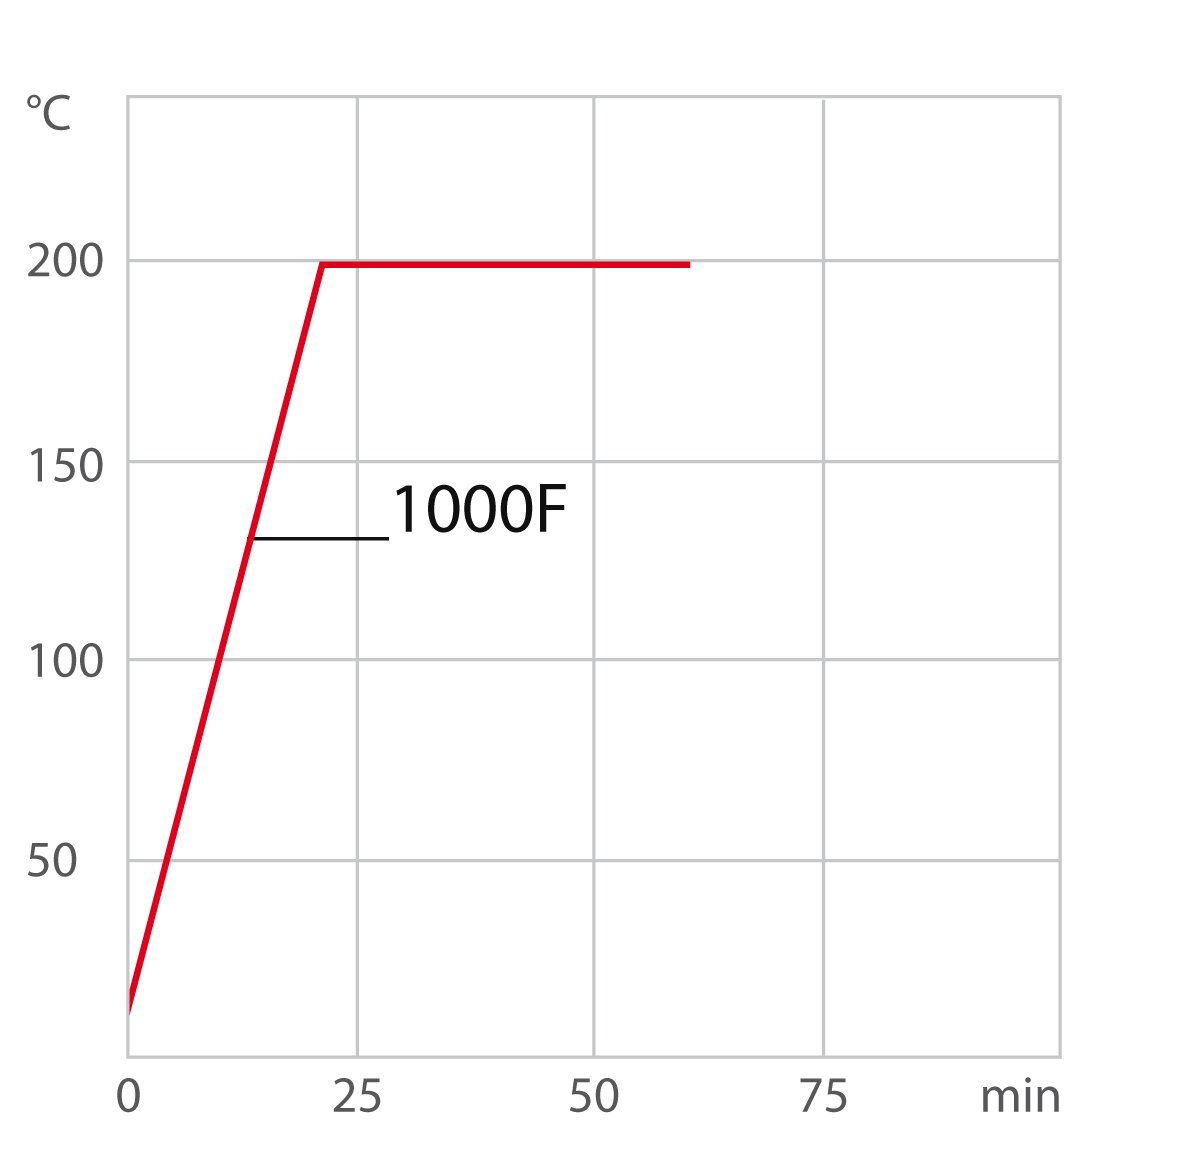 Curva de calentamiento 1000F